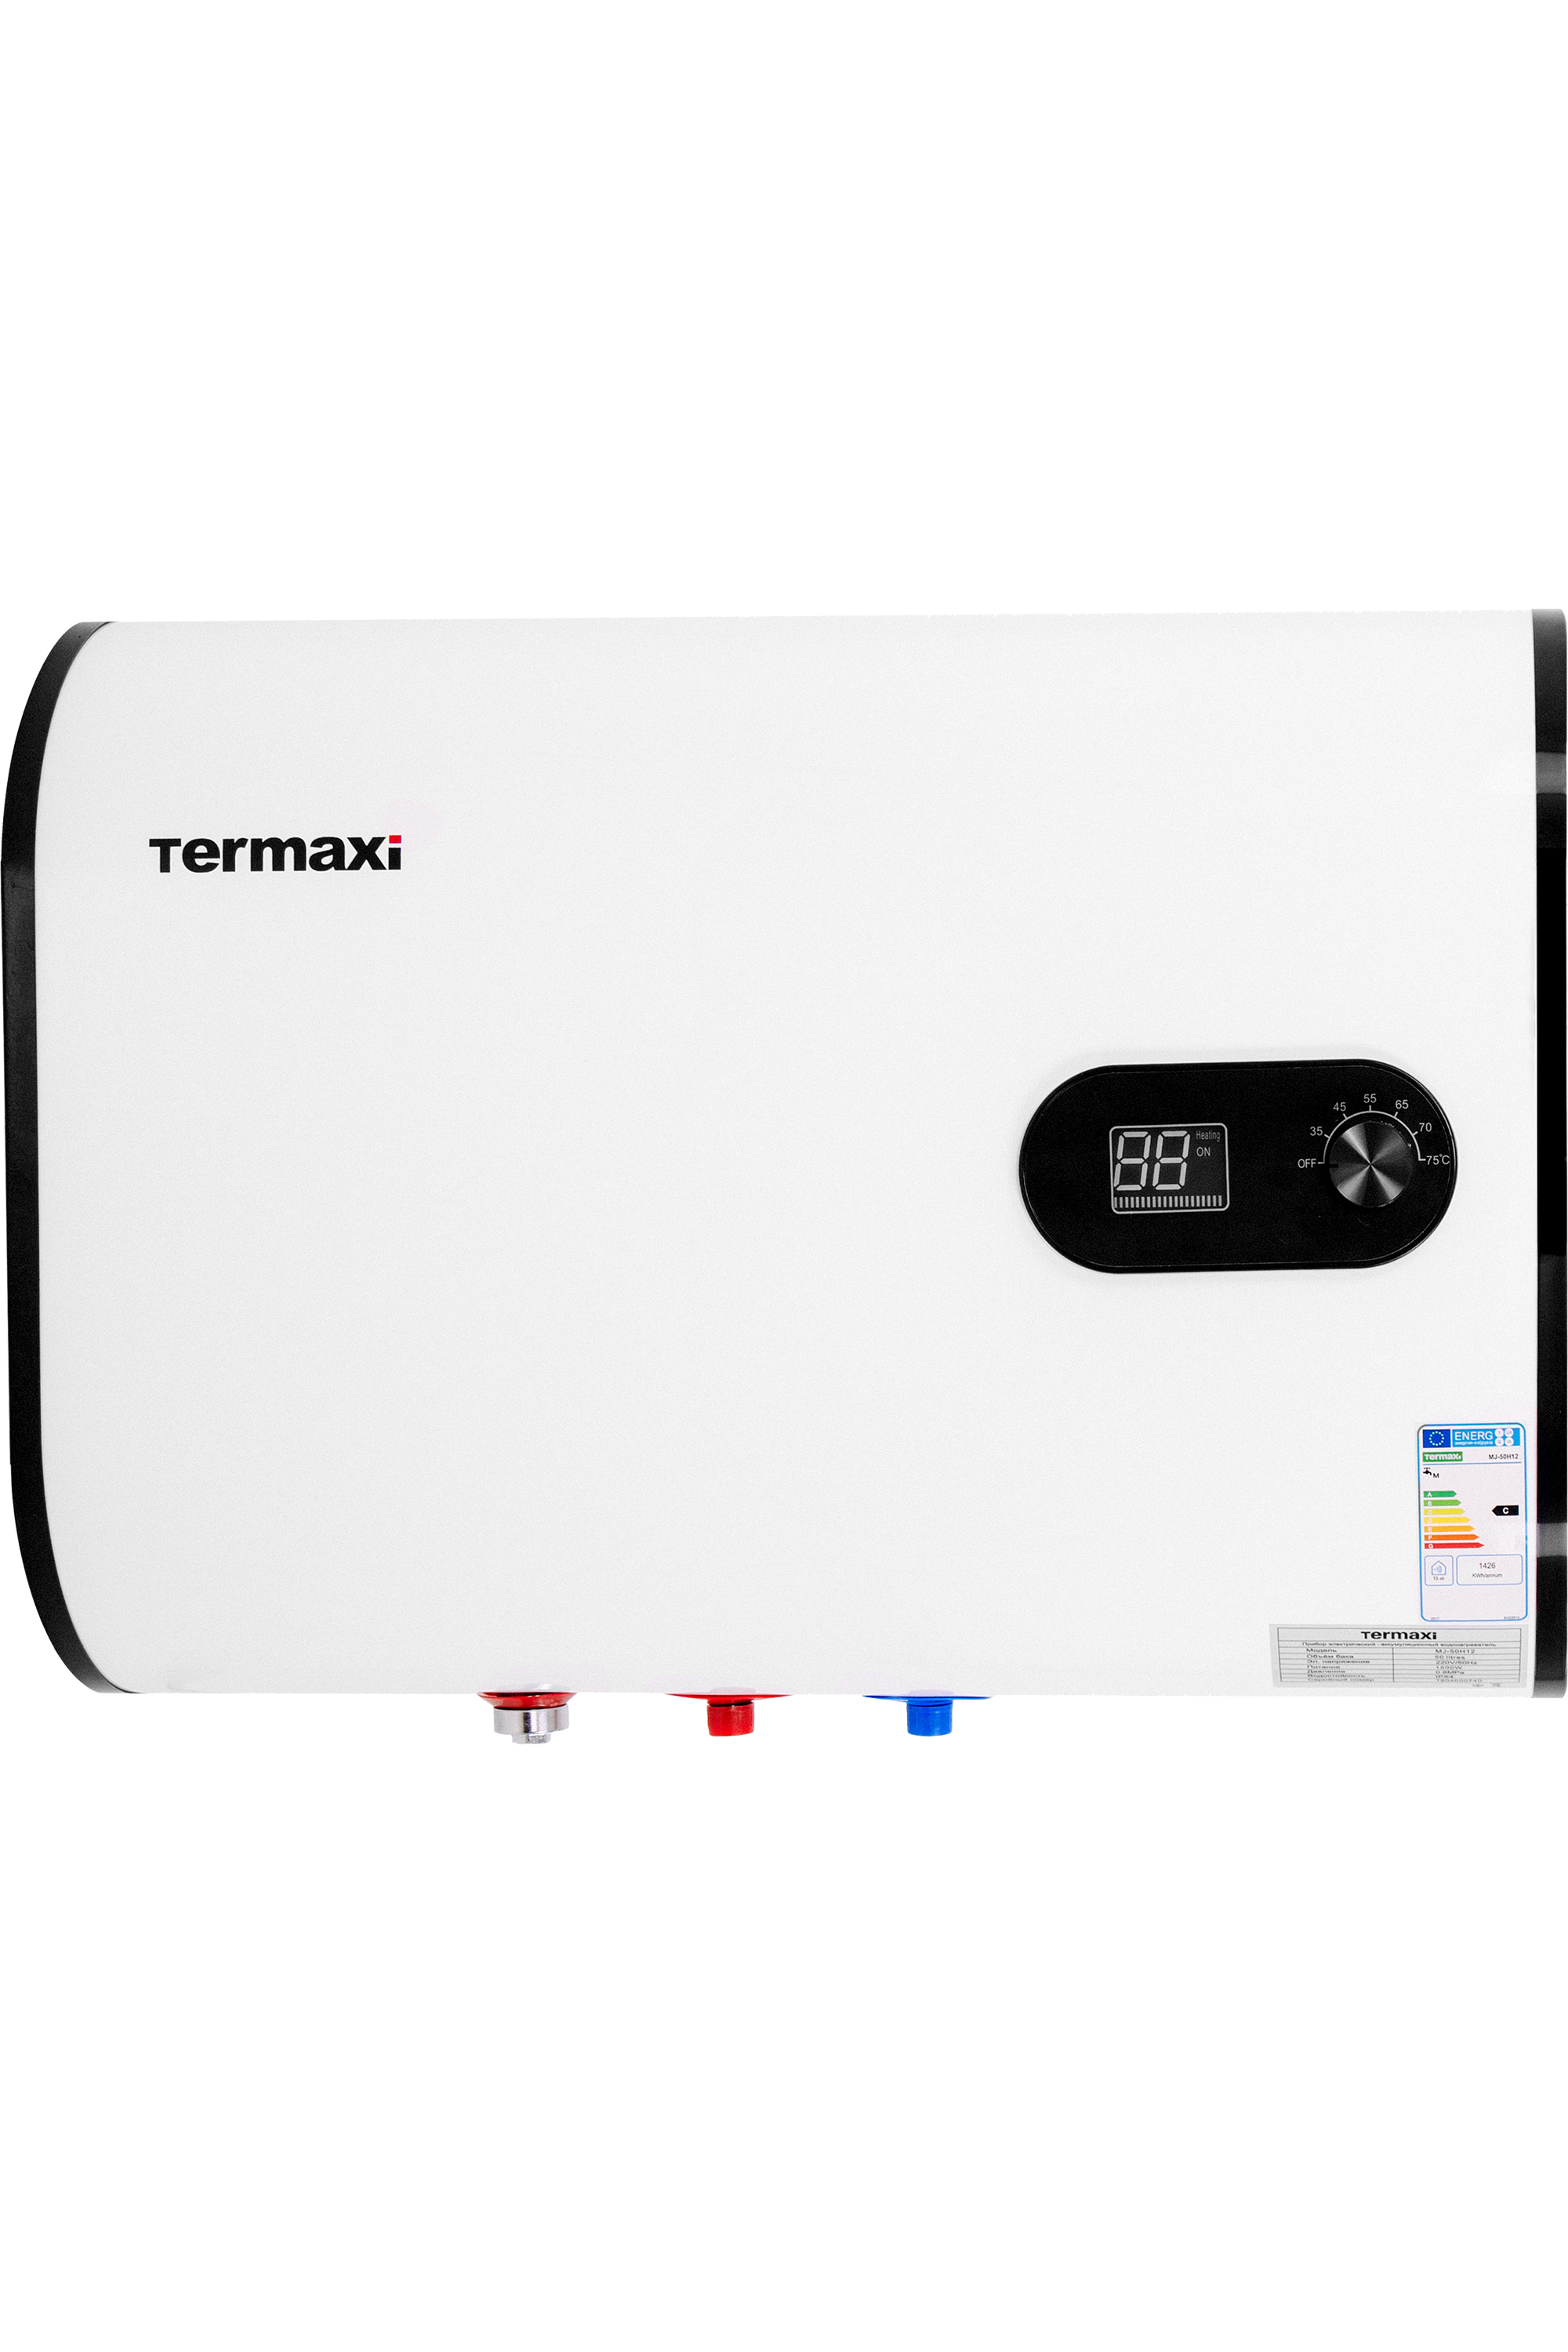 Характеристики бойлер termaxi на 50 литров Termaxi Flat MJ-50HI2